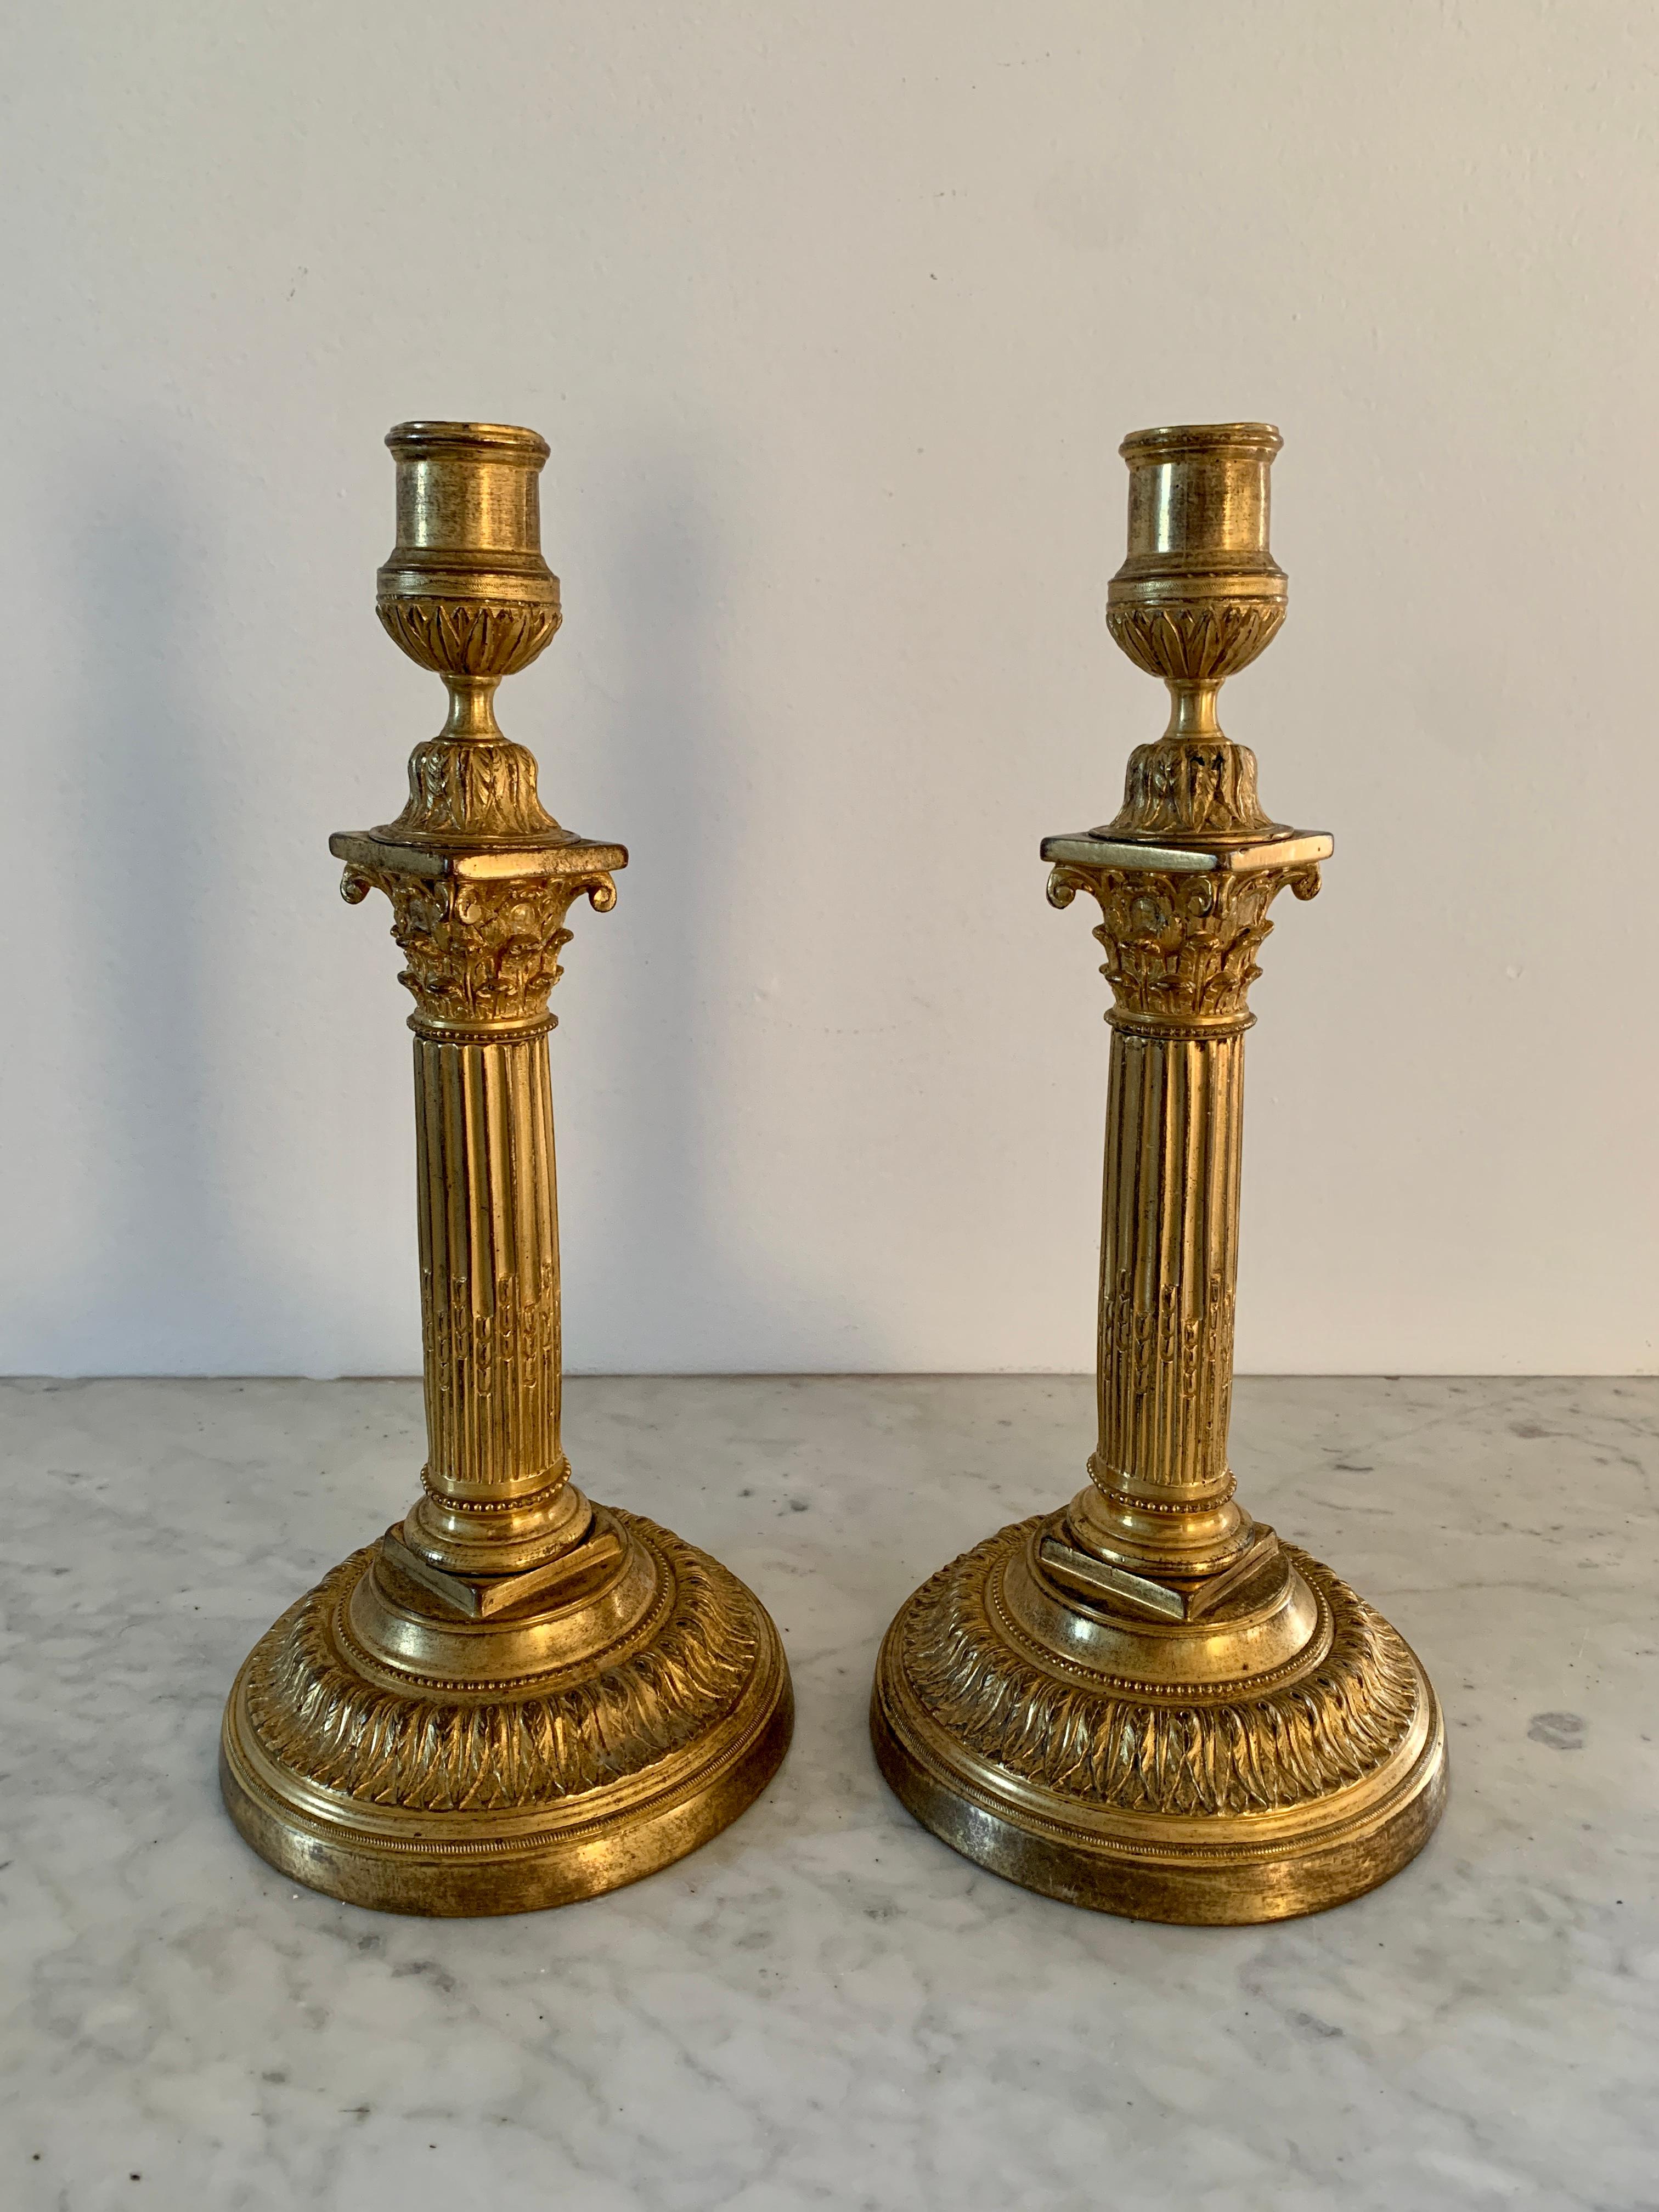 Magnifique paire de bougeoirs à colonne corinthienne en bronze doré de style néoclassique.

Italie, vers le milieu du XIXe siècle

Dimensions : 5,5 